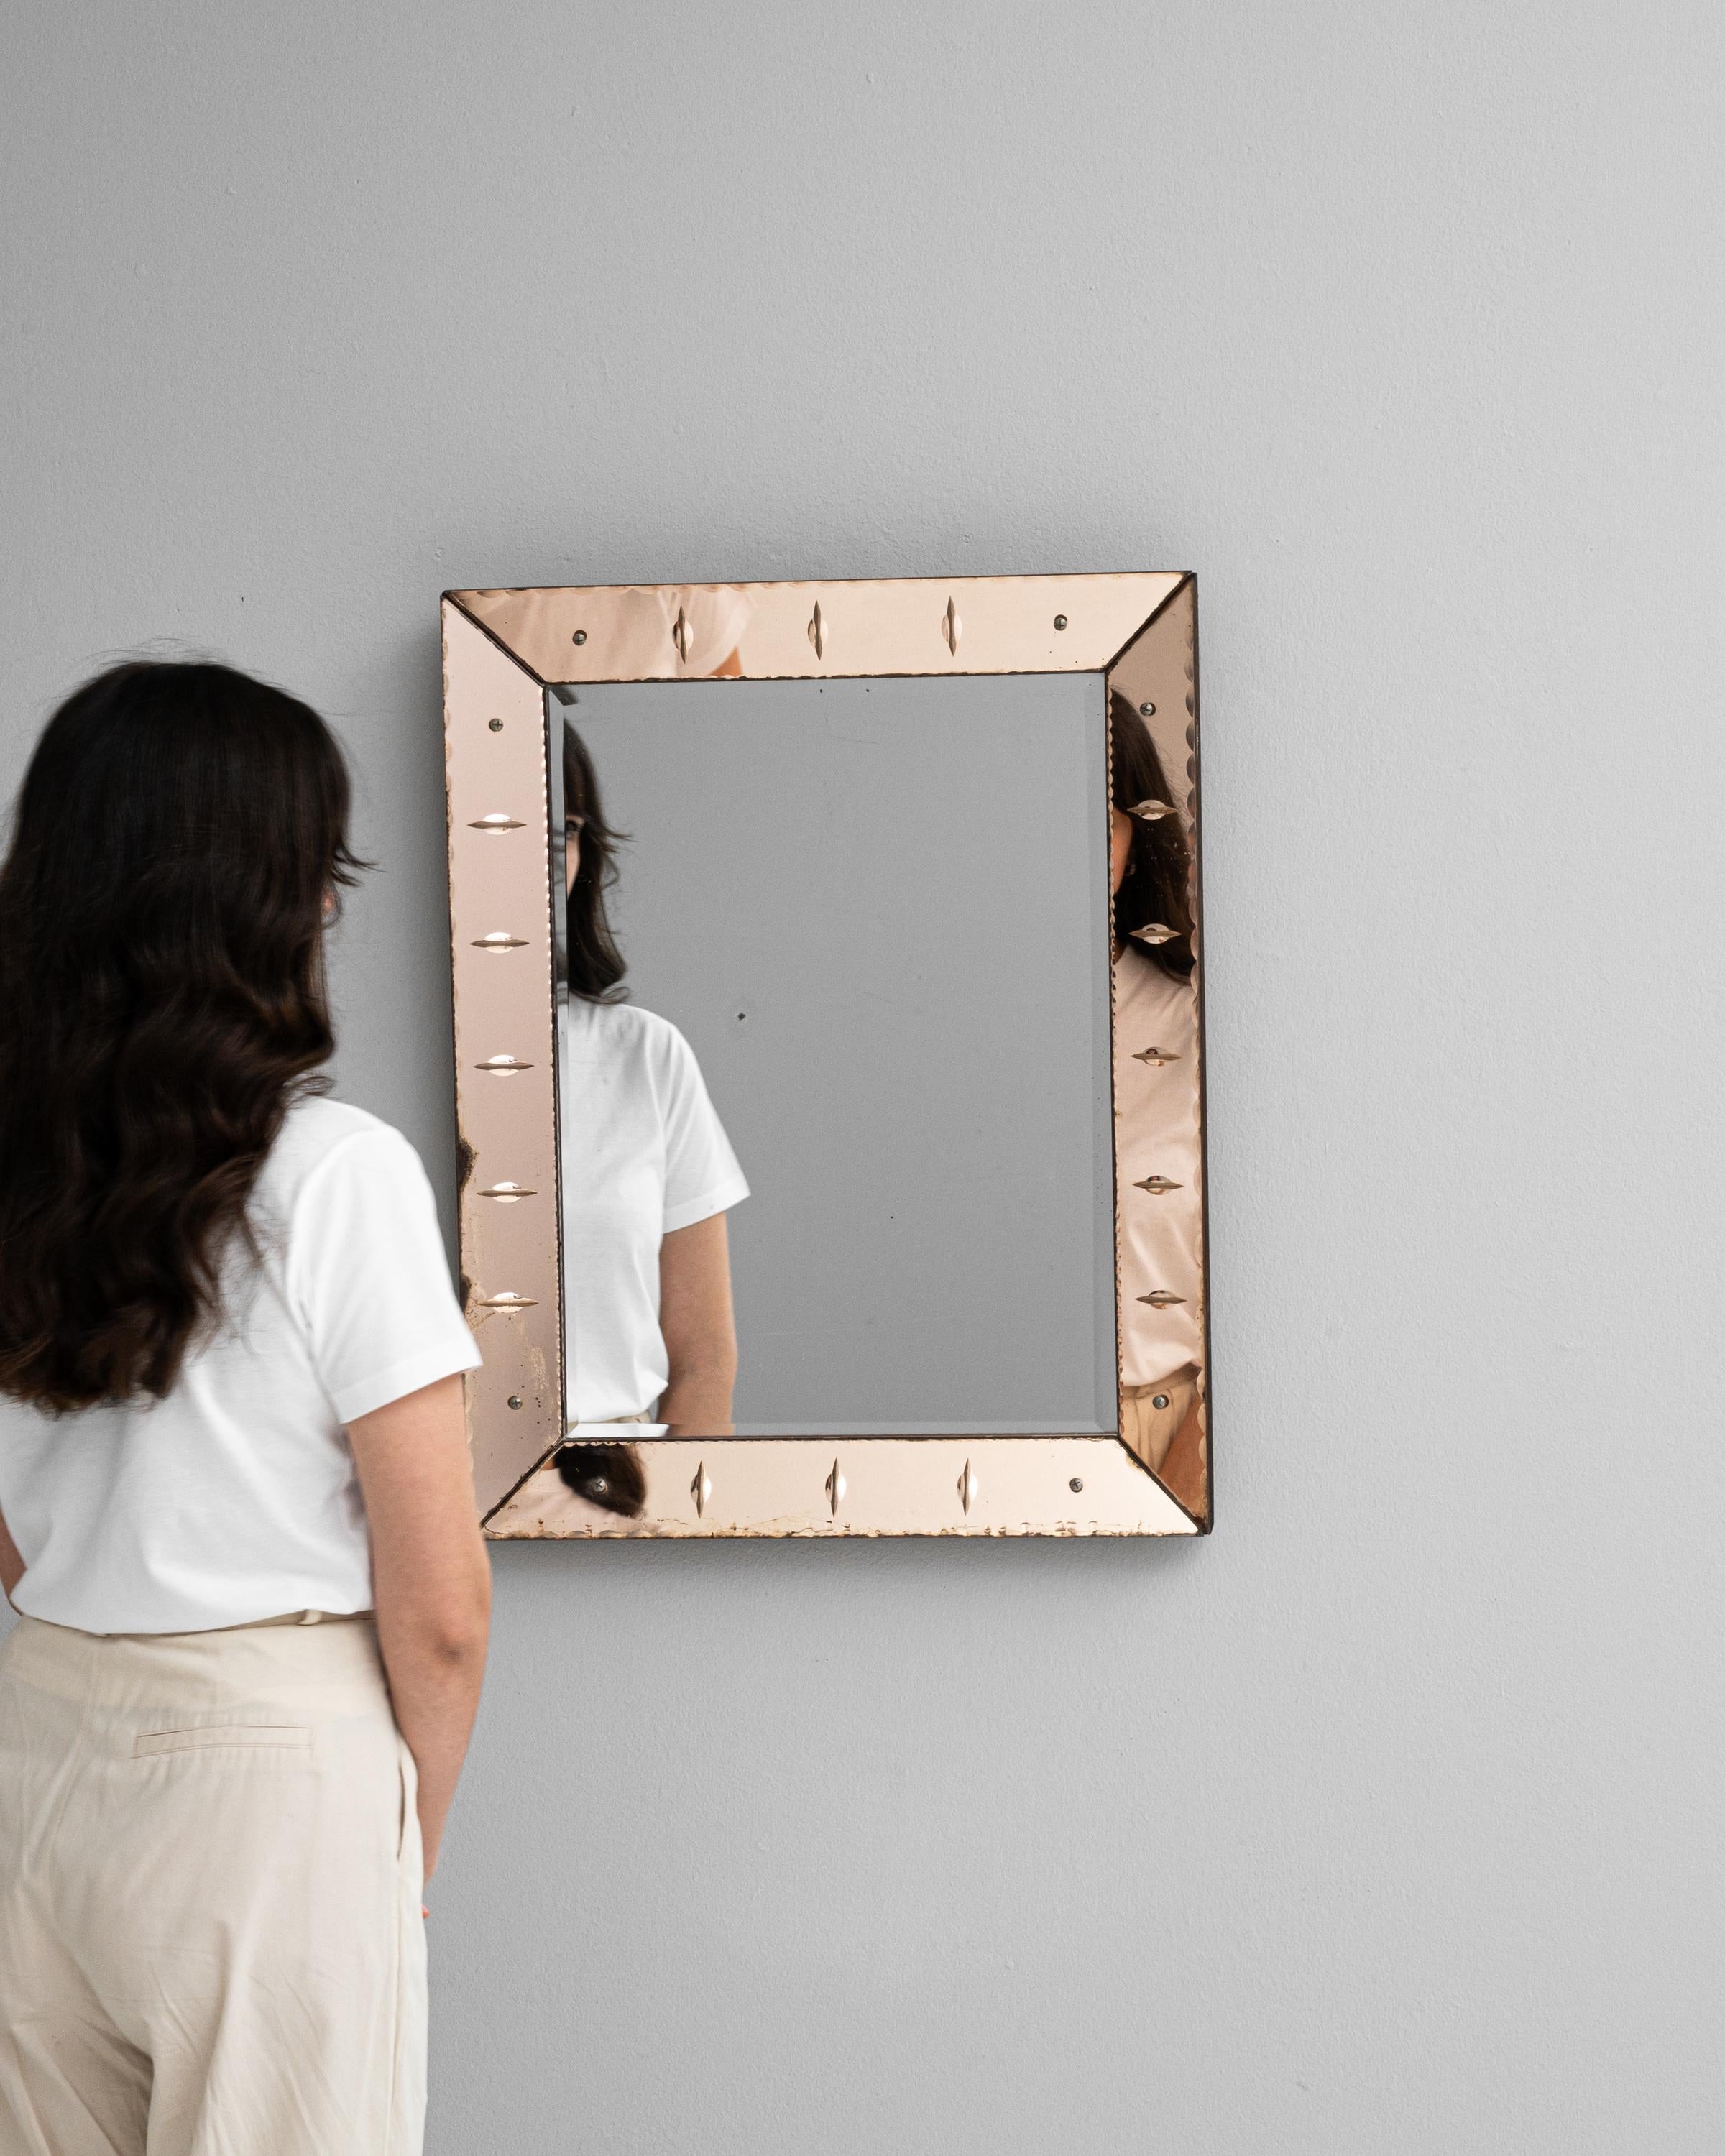 Ce miroir italien du XXe siècle est un charmant reflet de l'art minimaliste et du design du milieu du siècle. Le miroir, enchâssé dans un cadre carré épuré, est bordé d'une patine délicate qui suggère un doux passage du temps. L'élégance discrète du